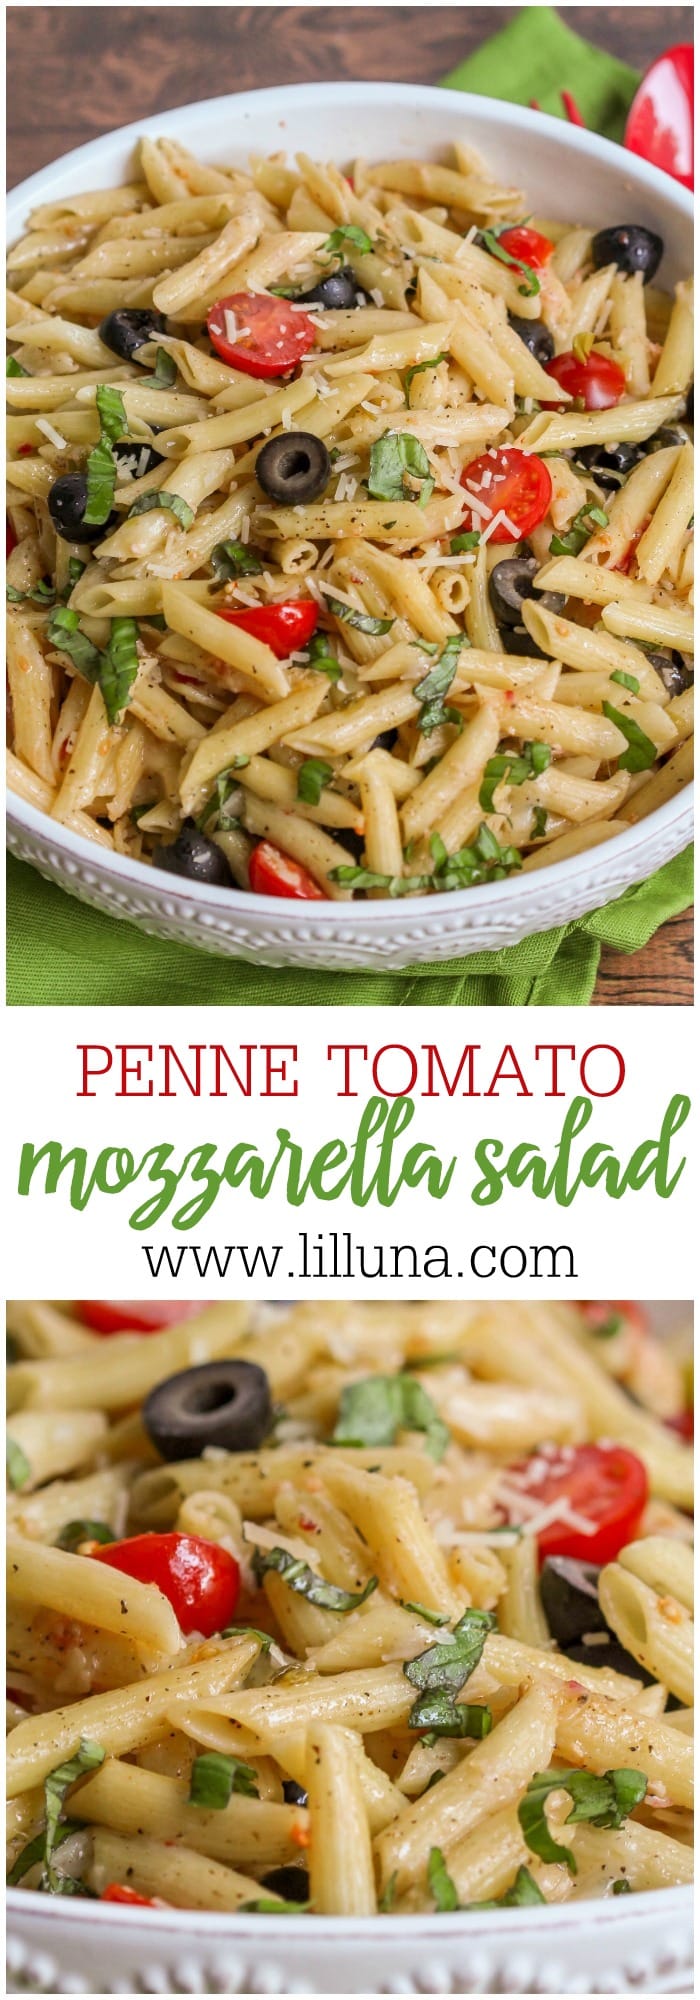 Penne, Tomato and Mozzarella Salad - Lil' Luna